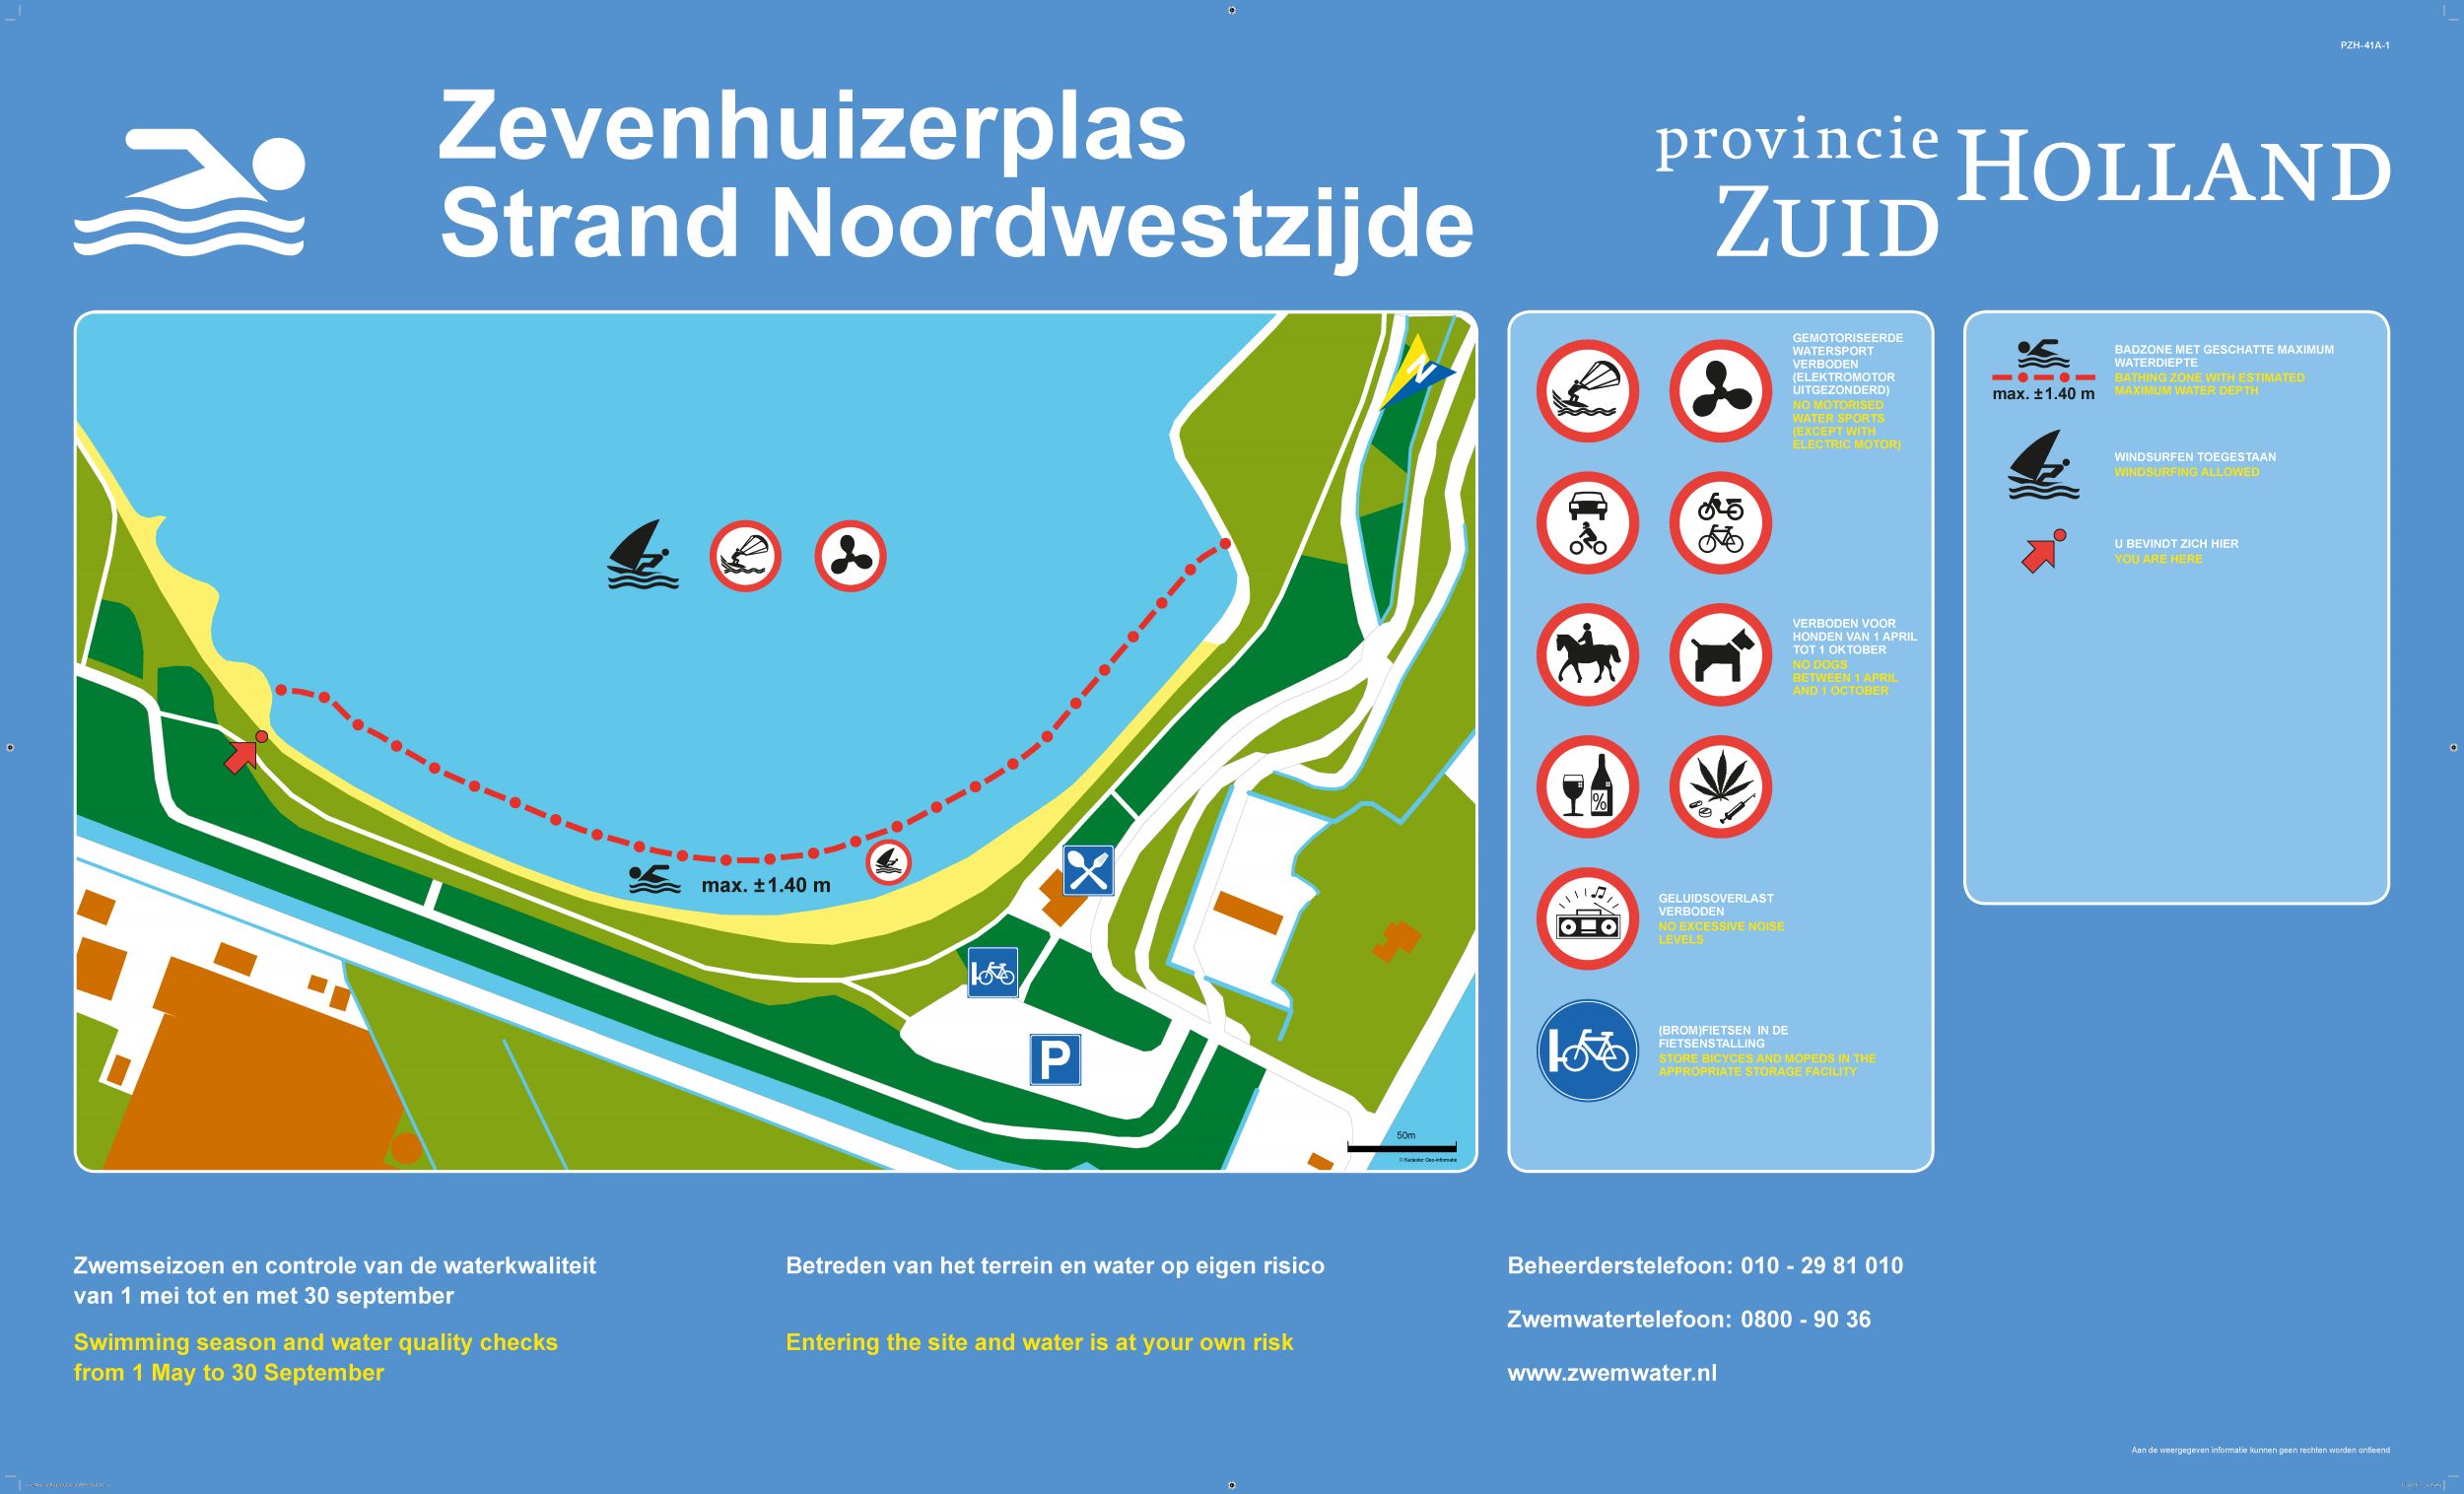 Het informatiebord bij zwemlocatie Zevenhuizerplas Strand Noordwestzijde